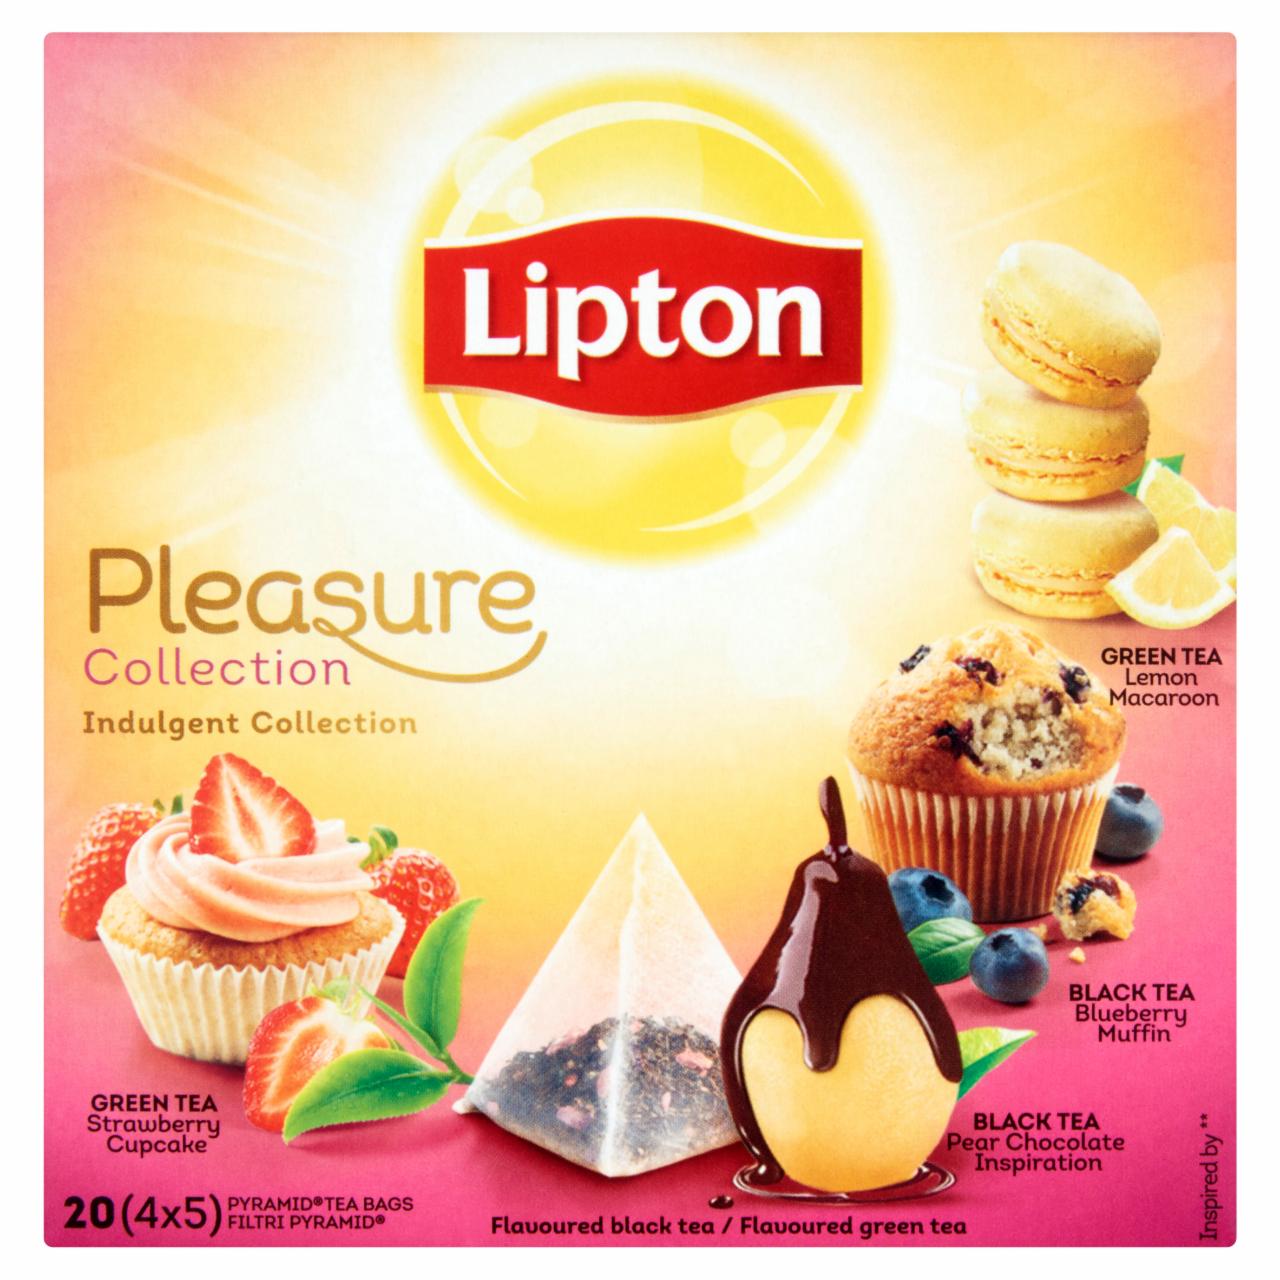 Képek - Lipton Pleasure Collection Indulgent Collection zöld- és fekete tea válogatás 20 piramis filter